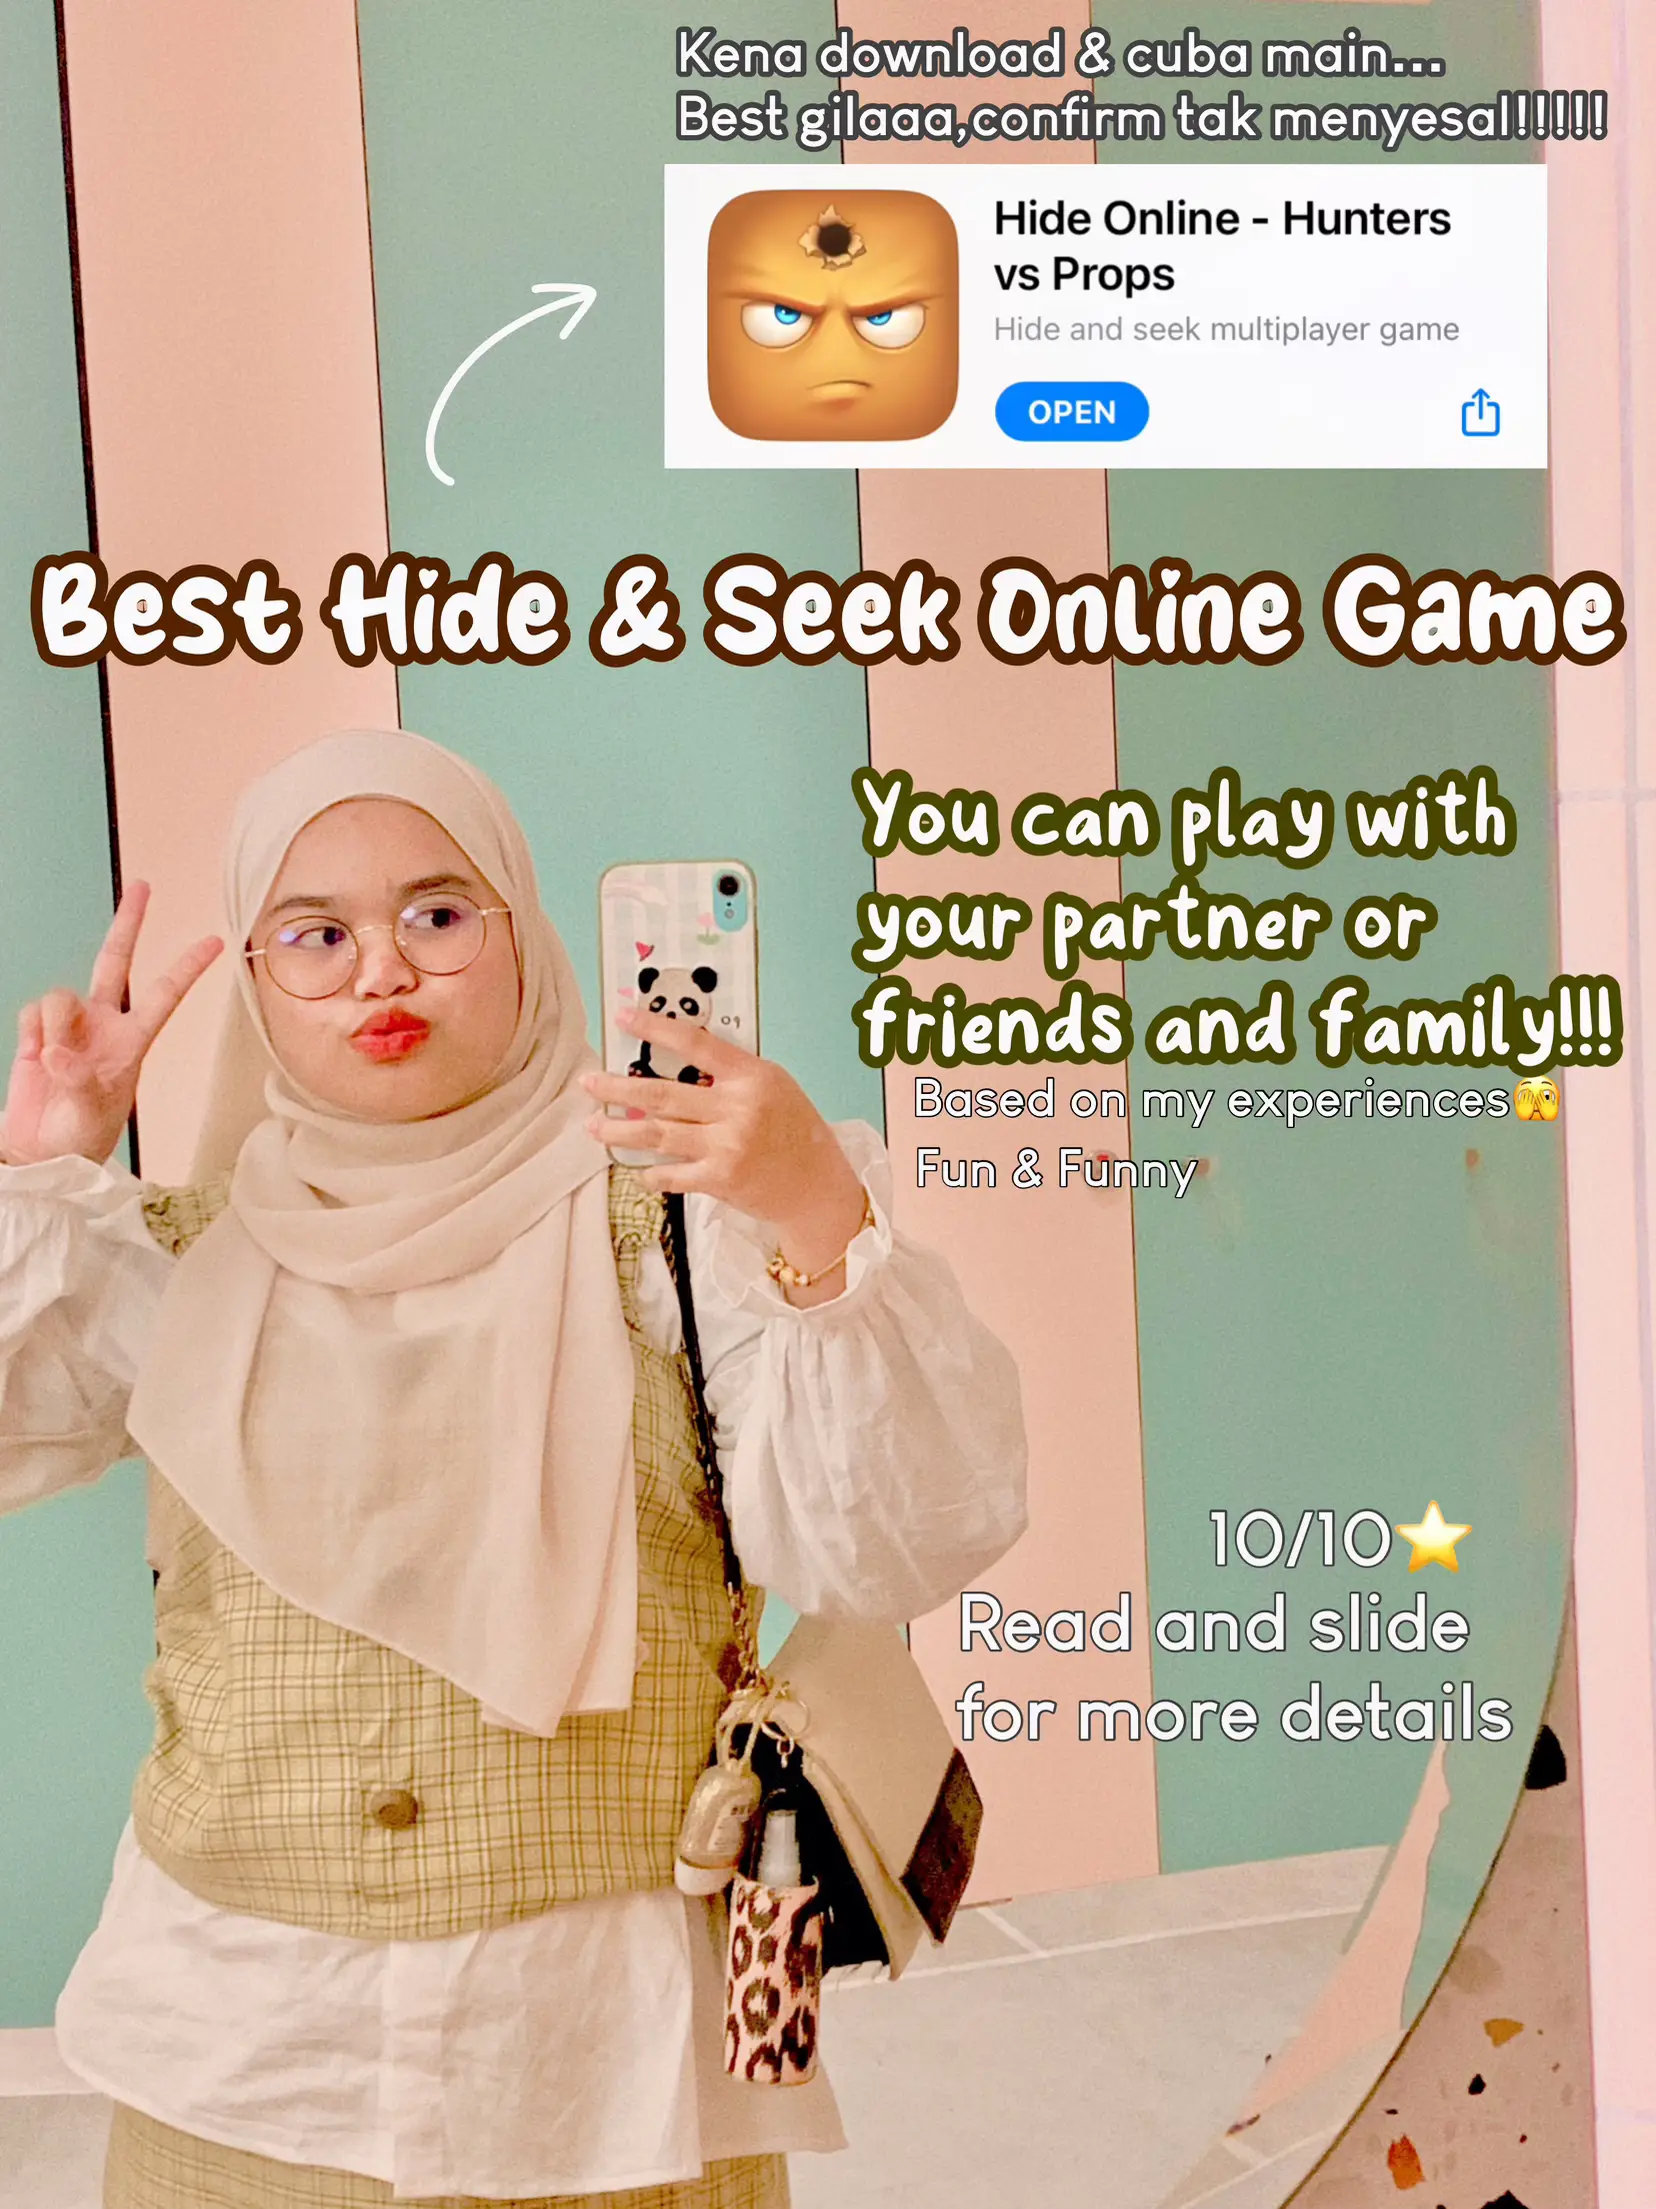 Prop Hunt Online: Hide & Seek for Android - Download